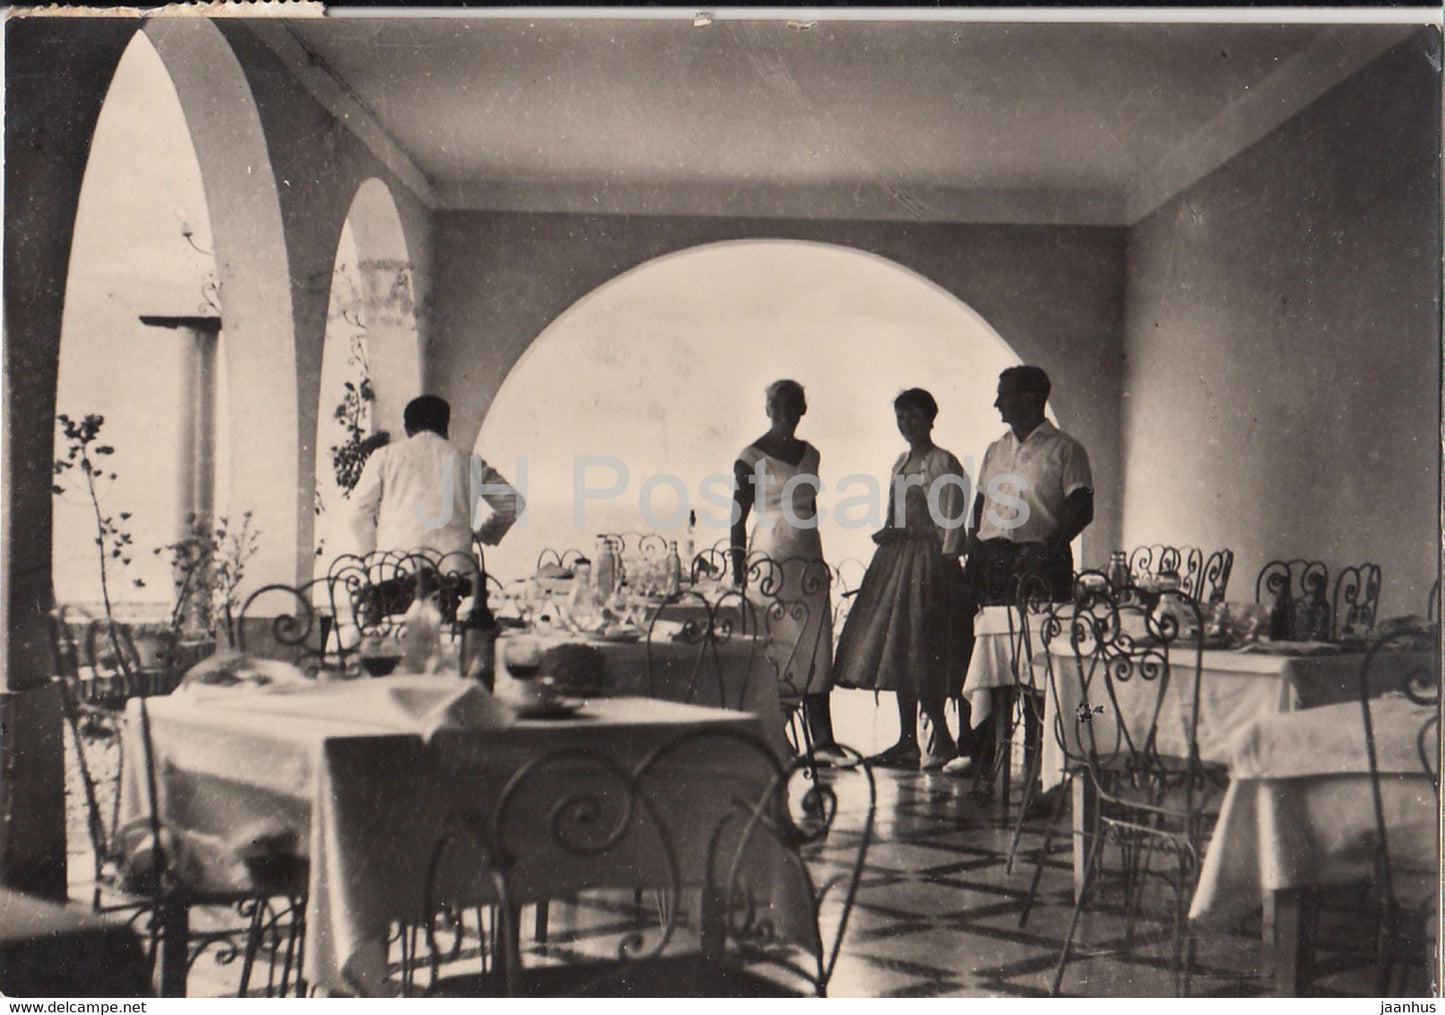 Hotel Biarritz - Situado en la playa entre Vinaroz y San Carlos de la Rapita - old postcard - 1958 - Spain - used - JH Postcards